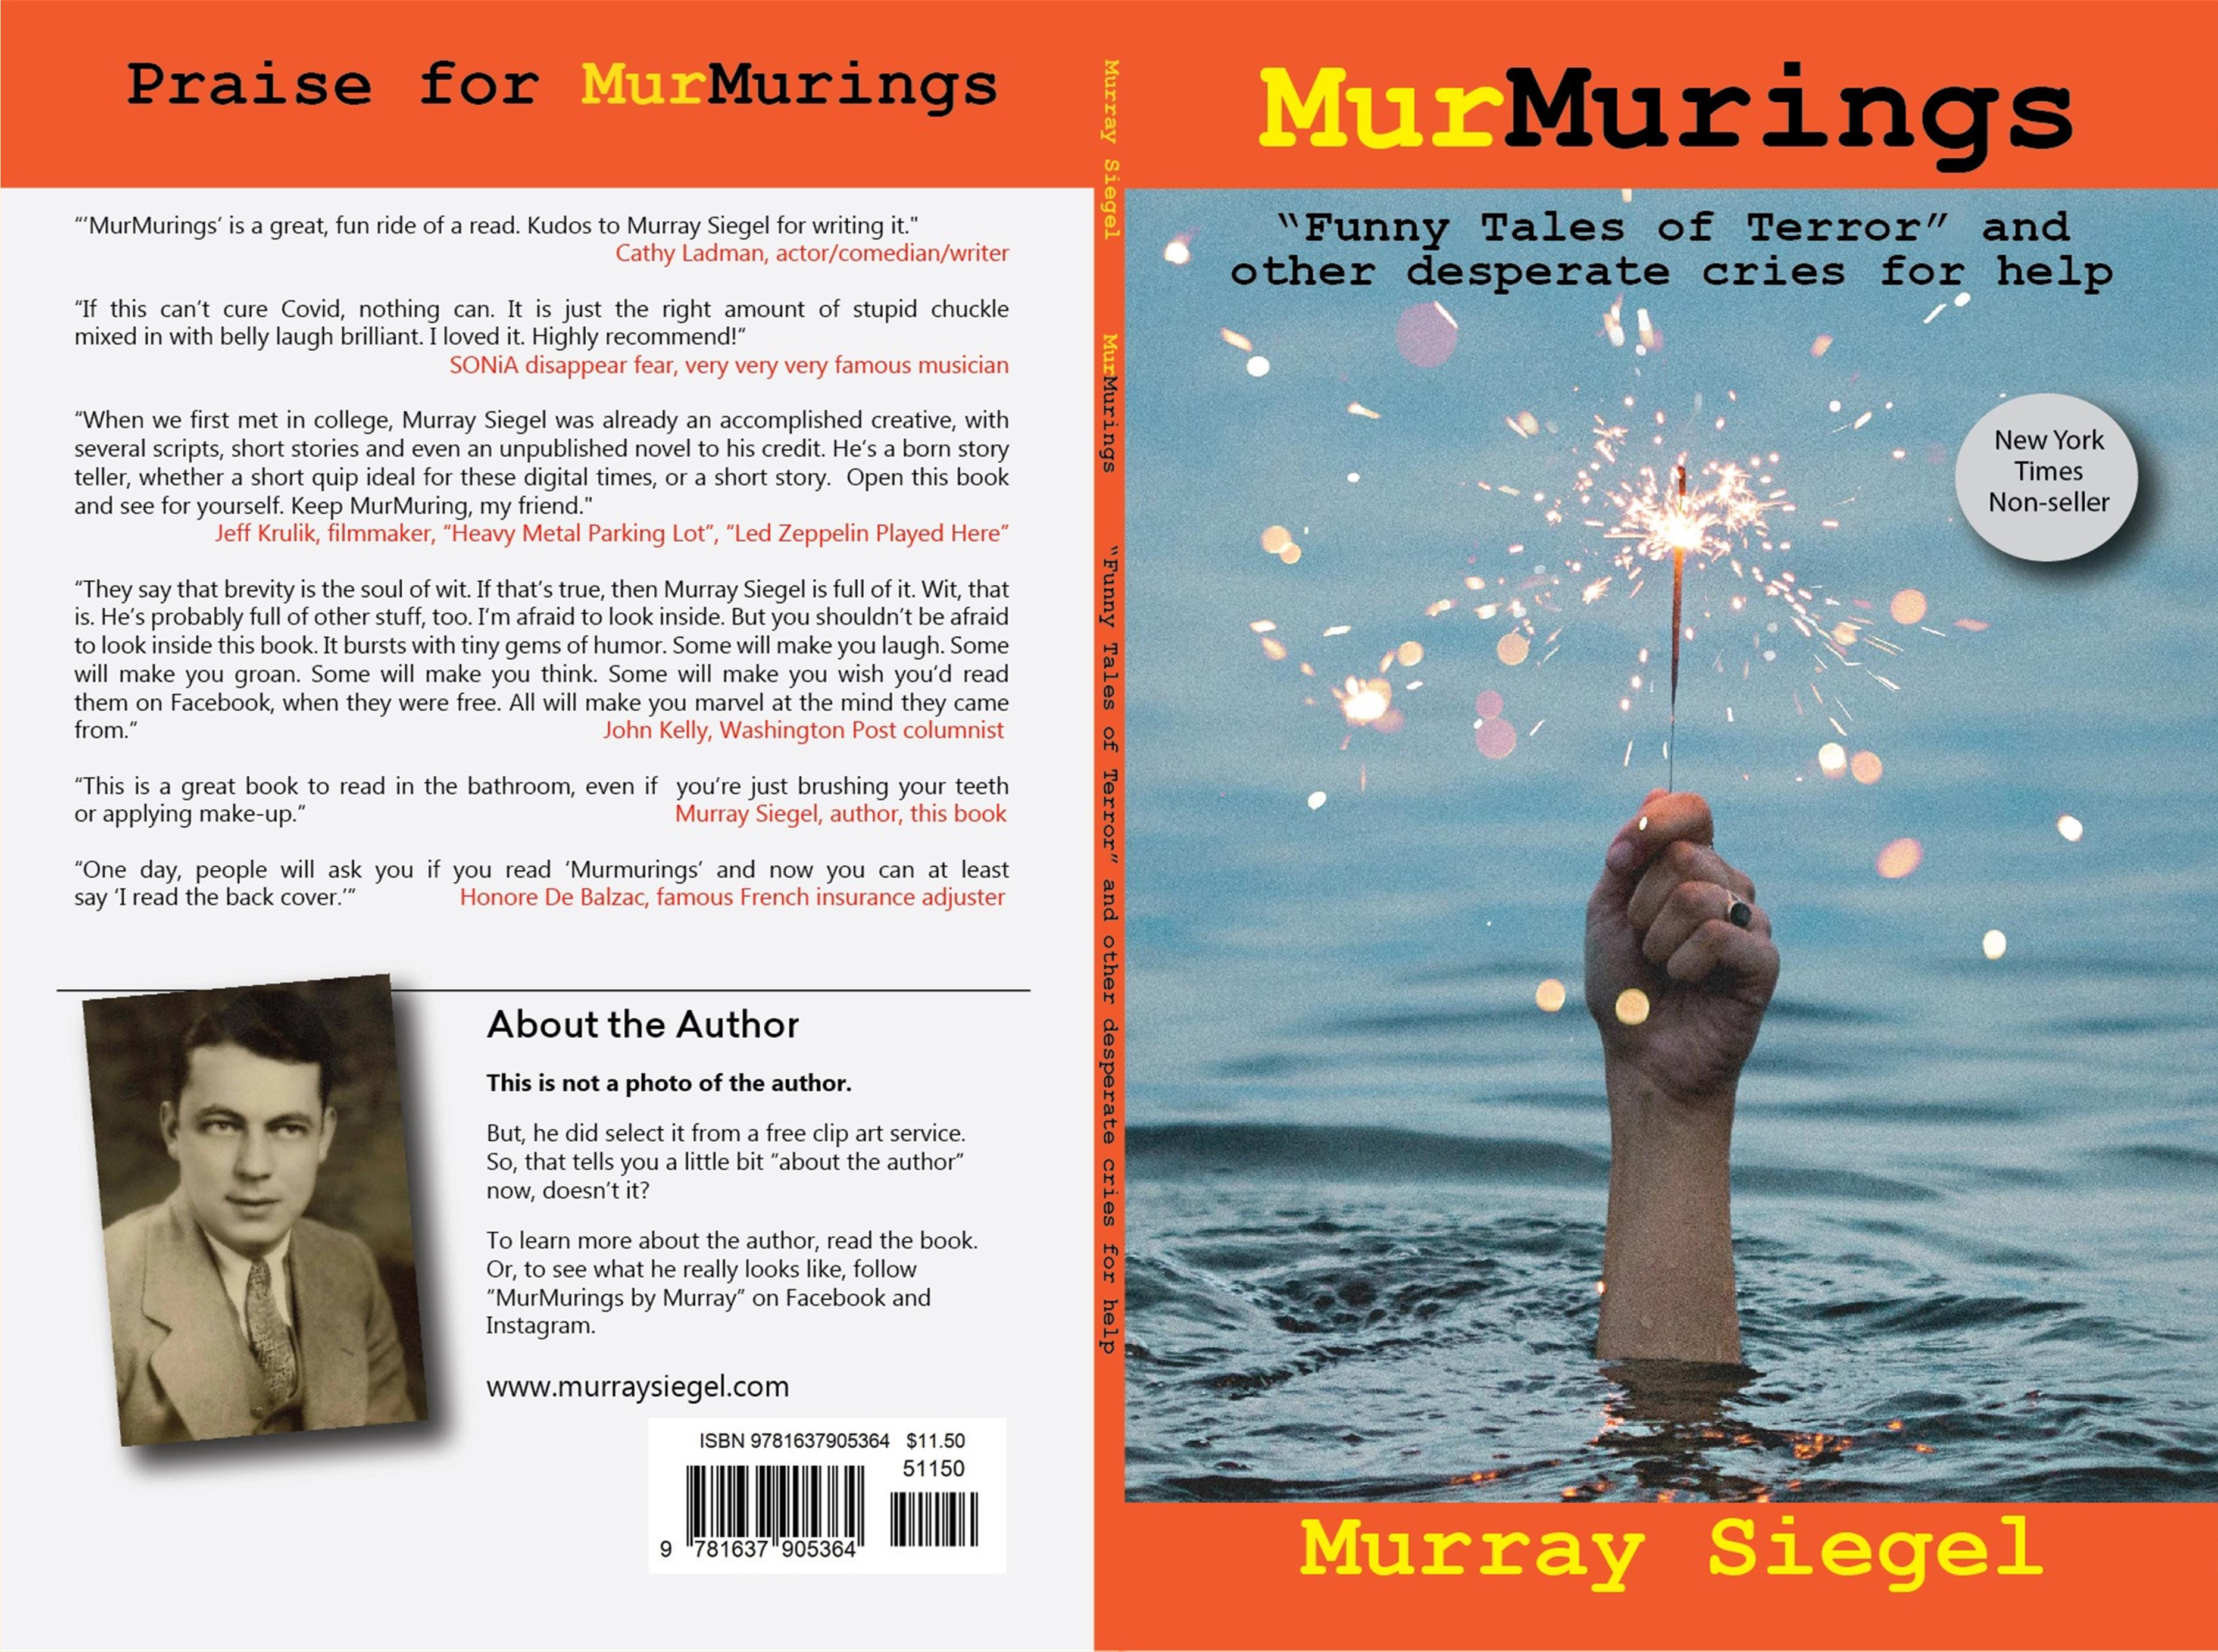 Murmurings cover image